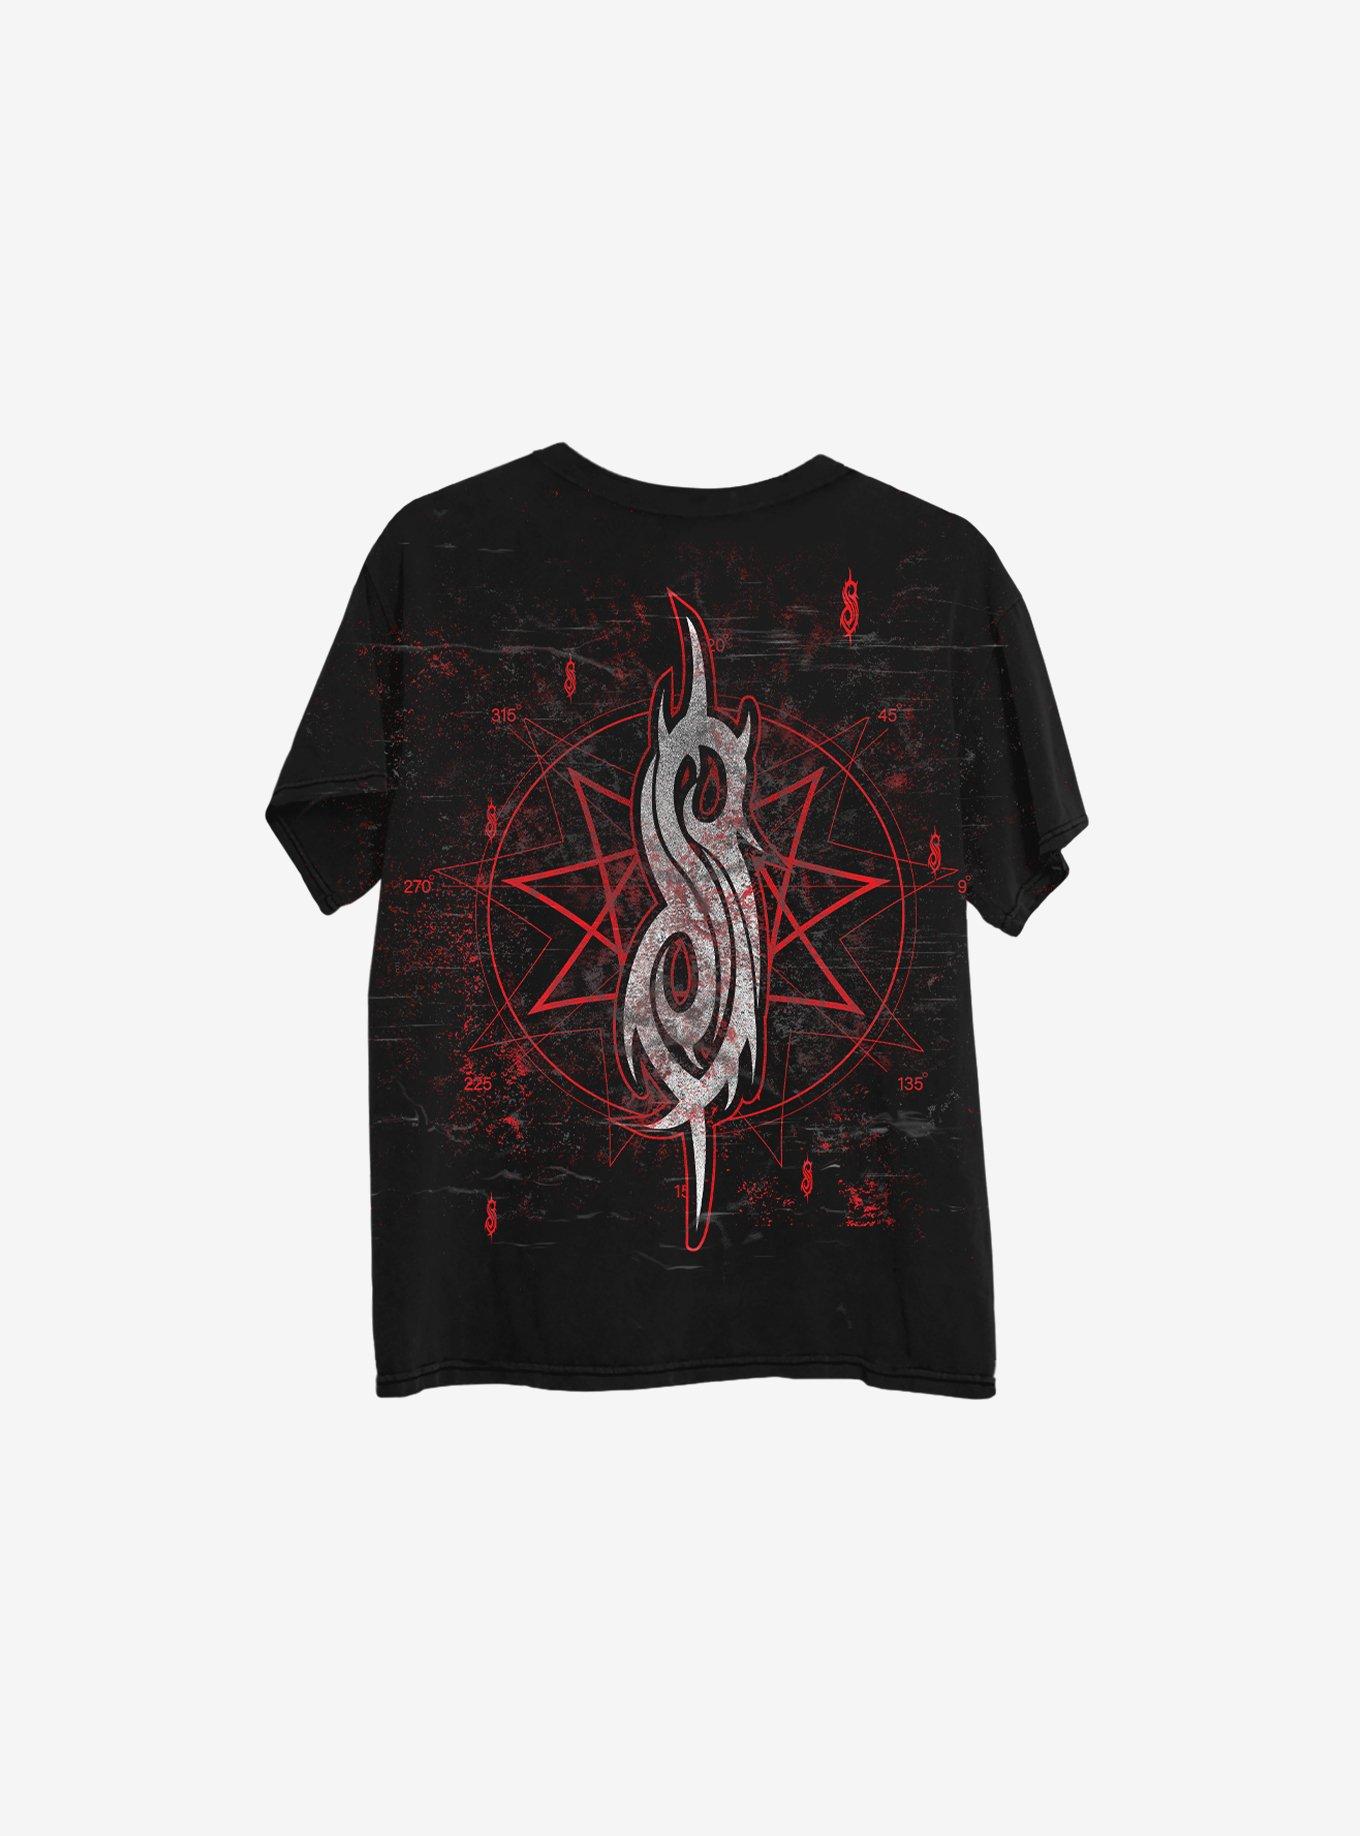 Slipknot Logo Boyfriend Fit Girls T-Shirt, BLACK, alternate